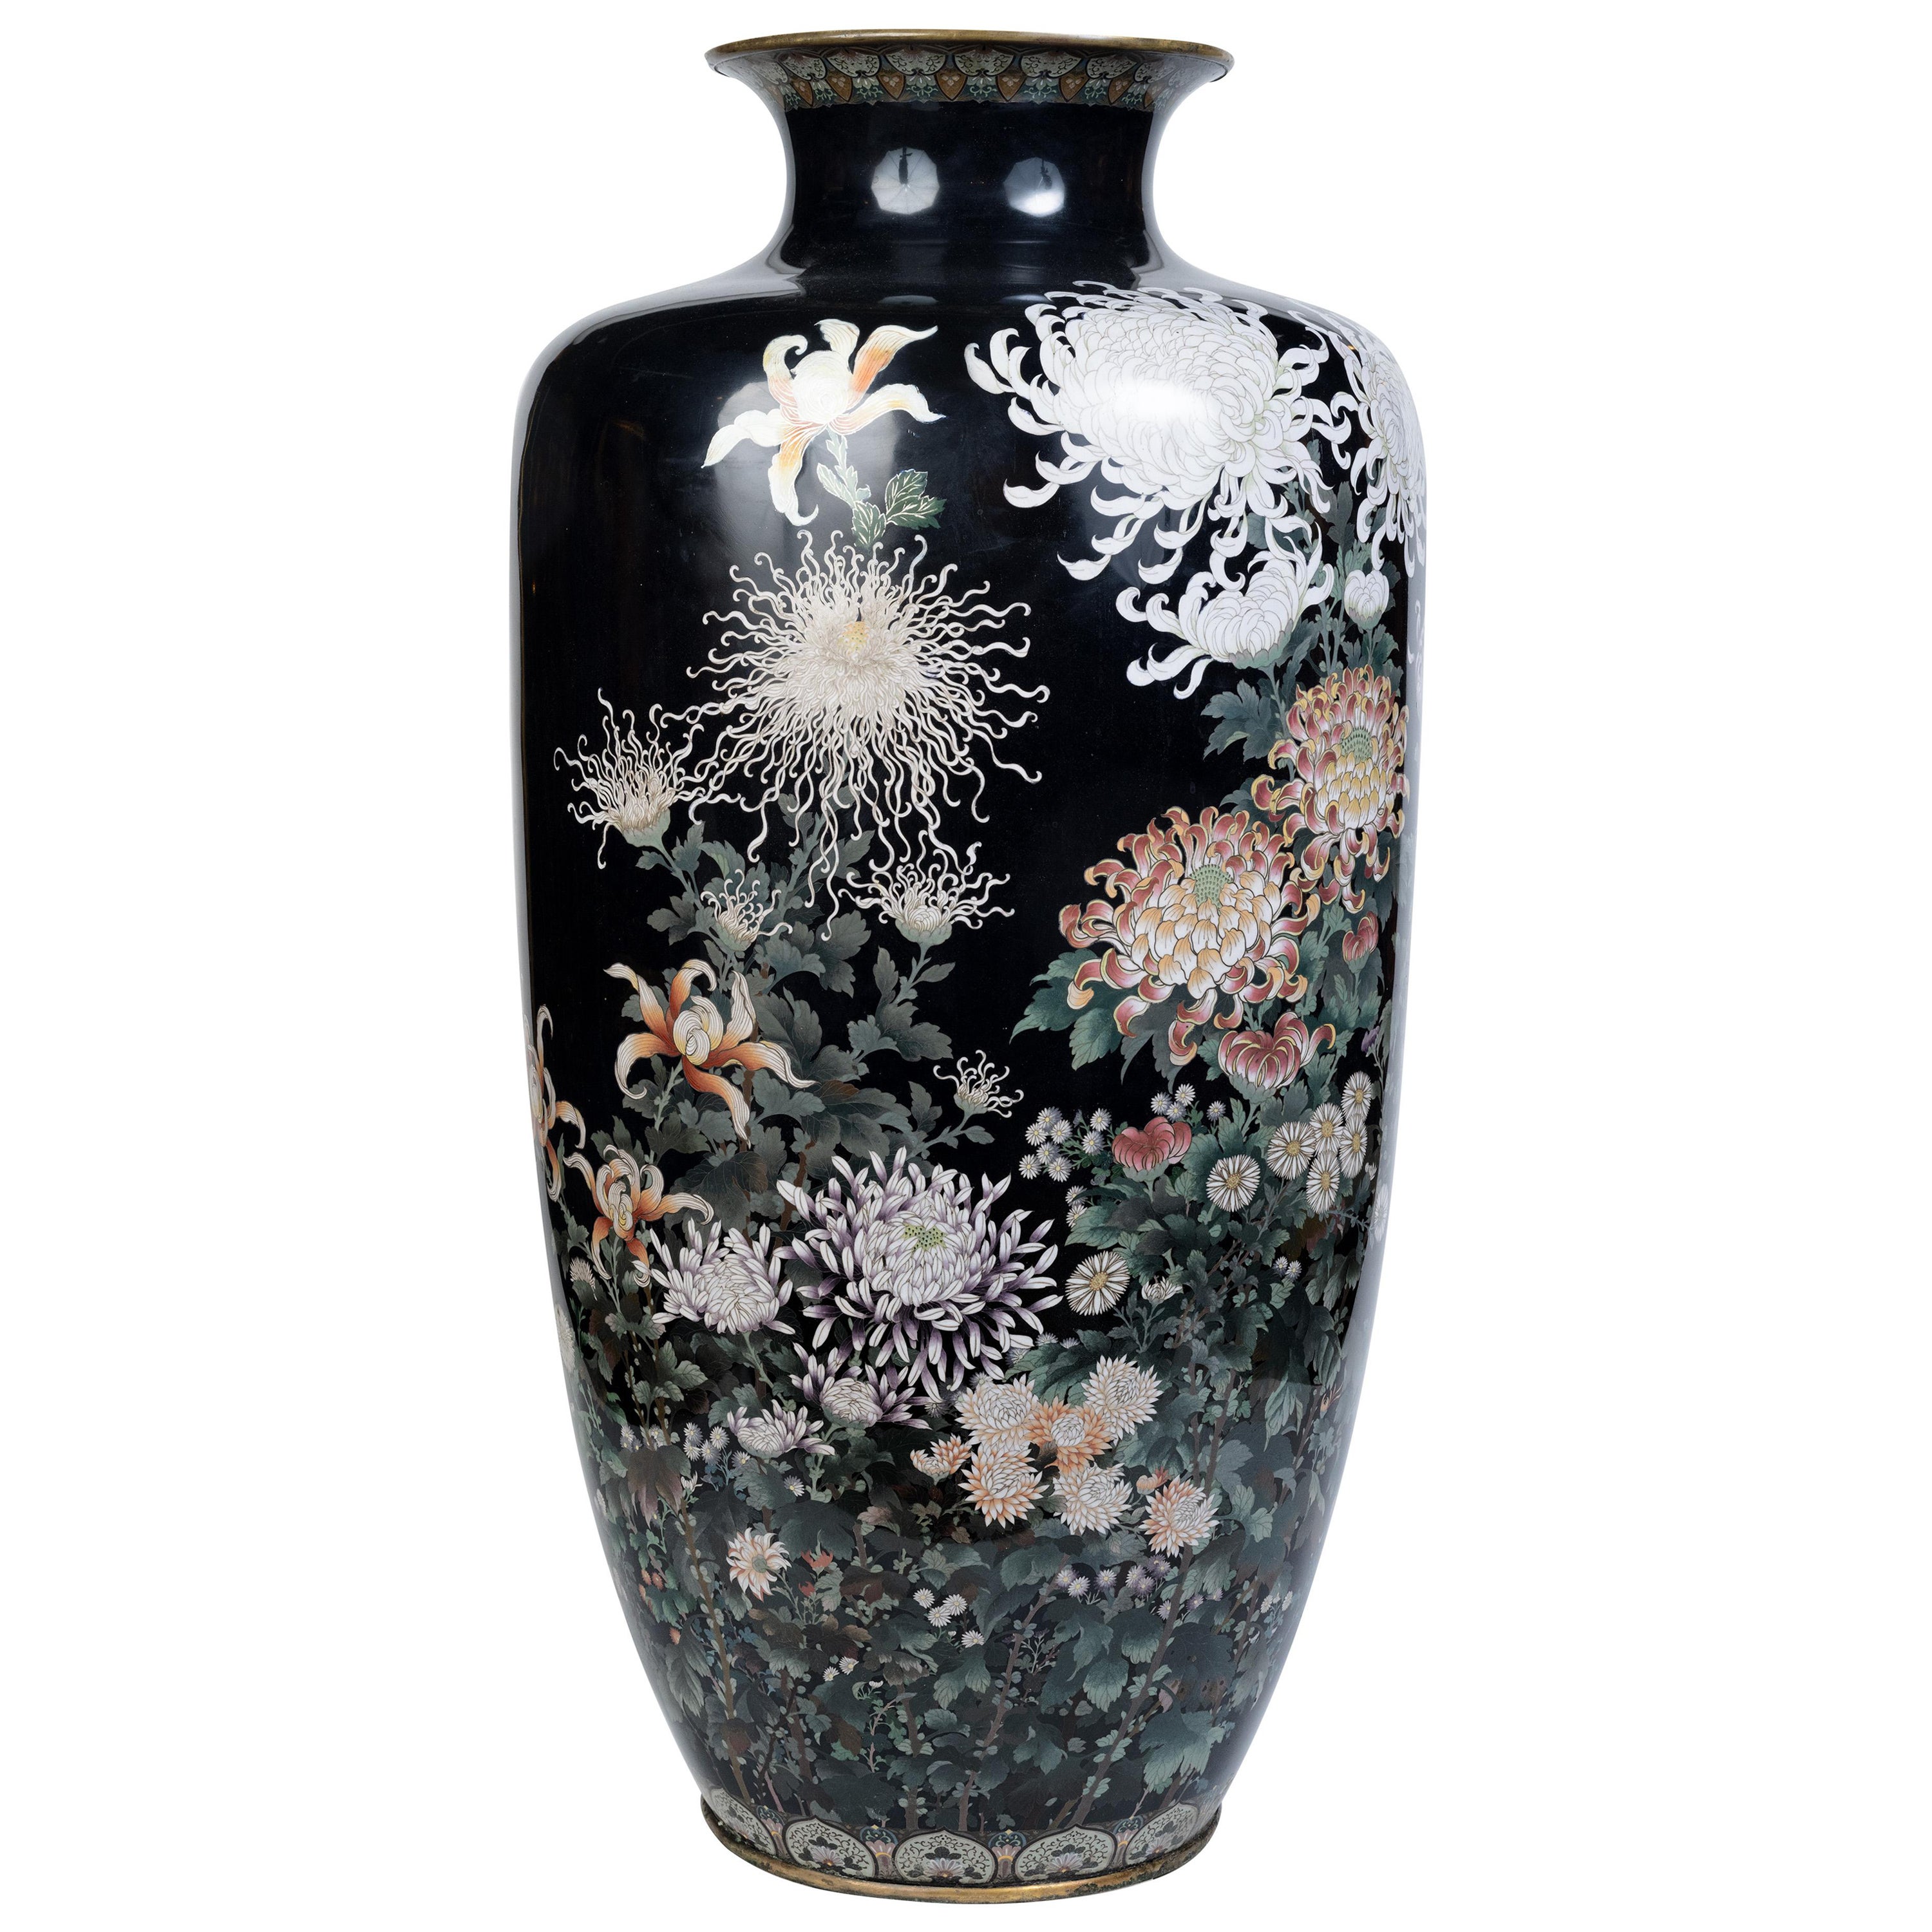 Monumental jarrón japonés de esmalte cloisonné, atribuido a Hayashi Kodenji